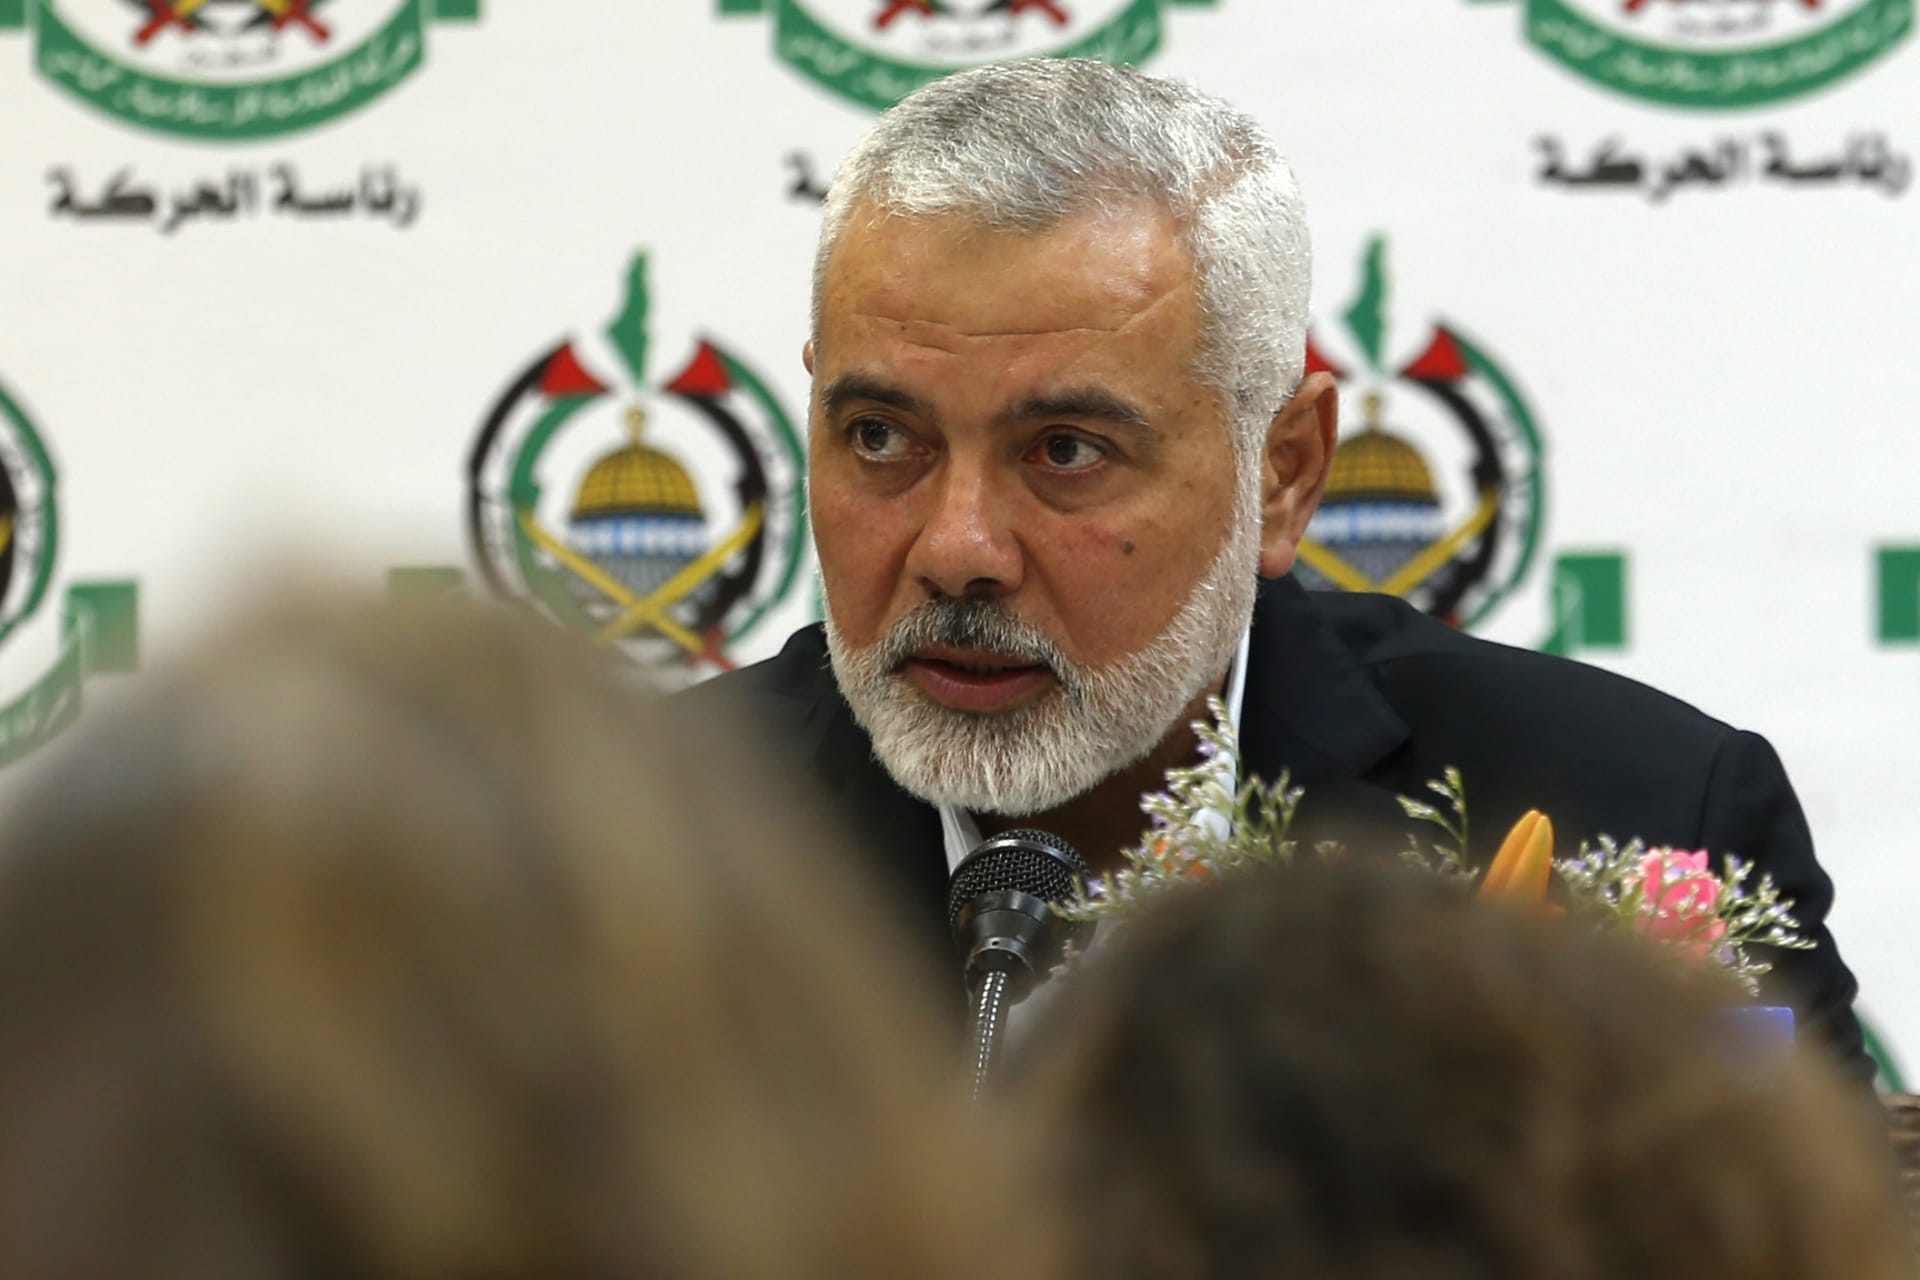 رئيس المكتب السياسي لحركة "حماس" إسماعيل هنية